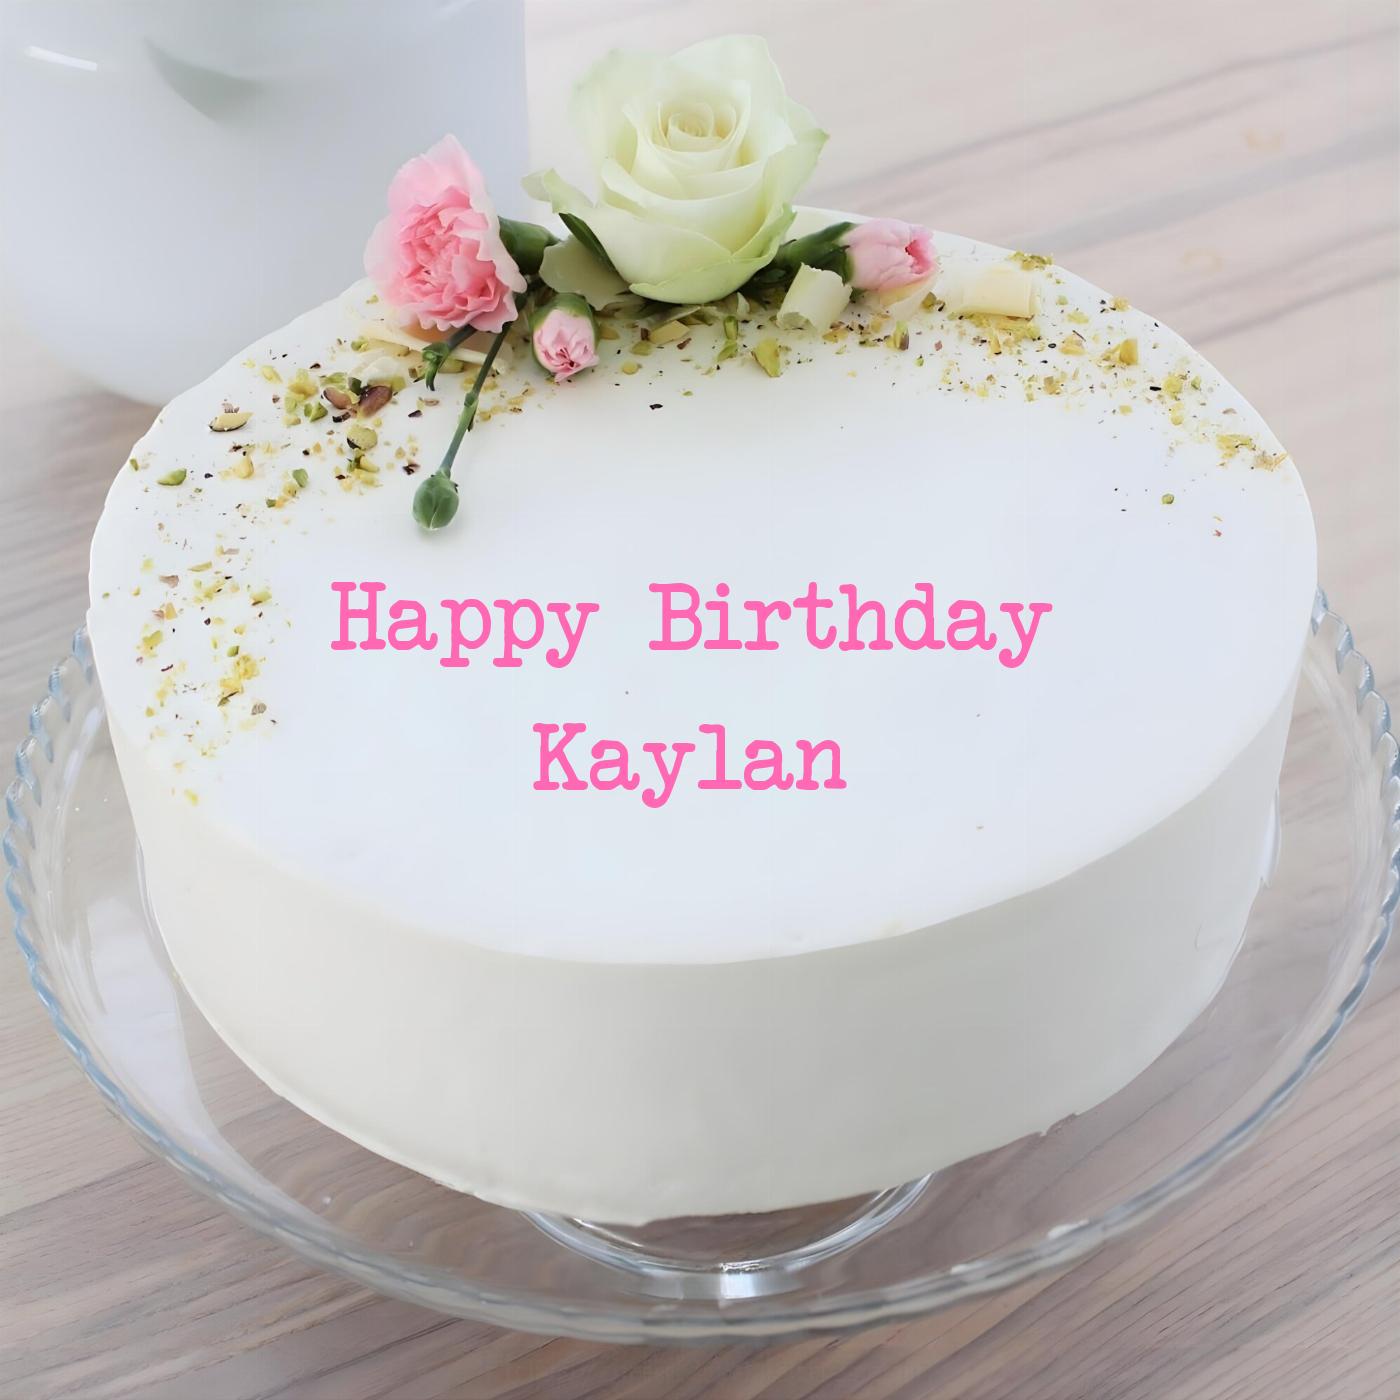 Happy Birthday Kaylan White Pink Roses Cake